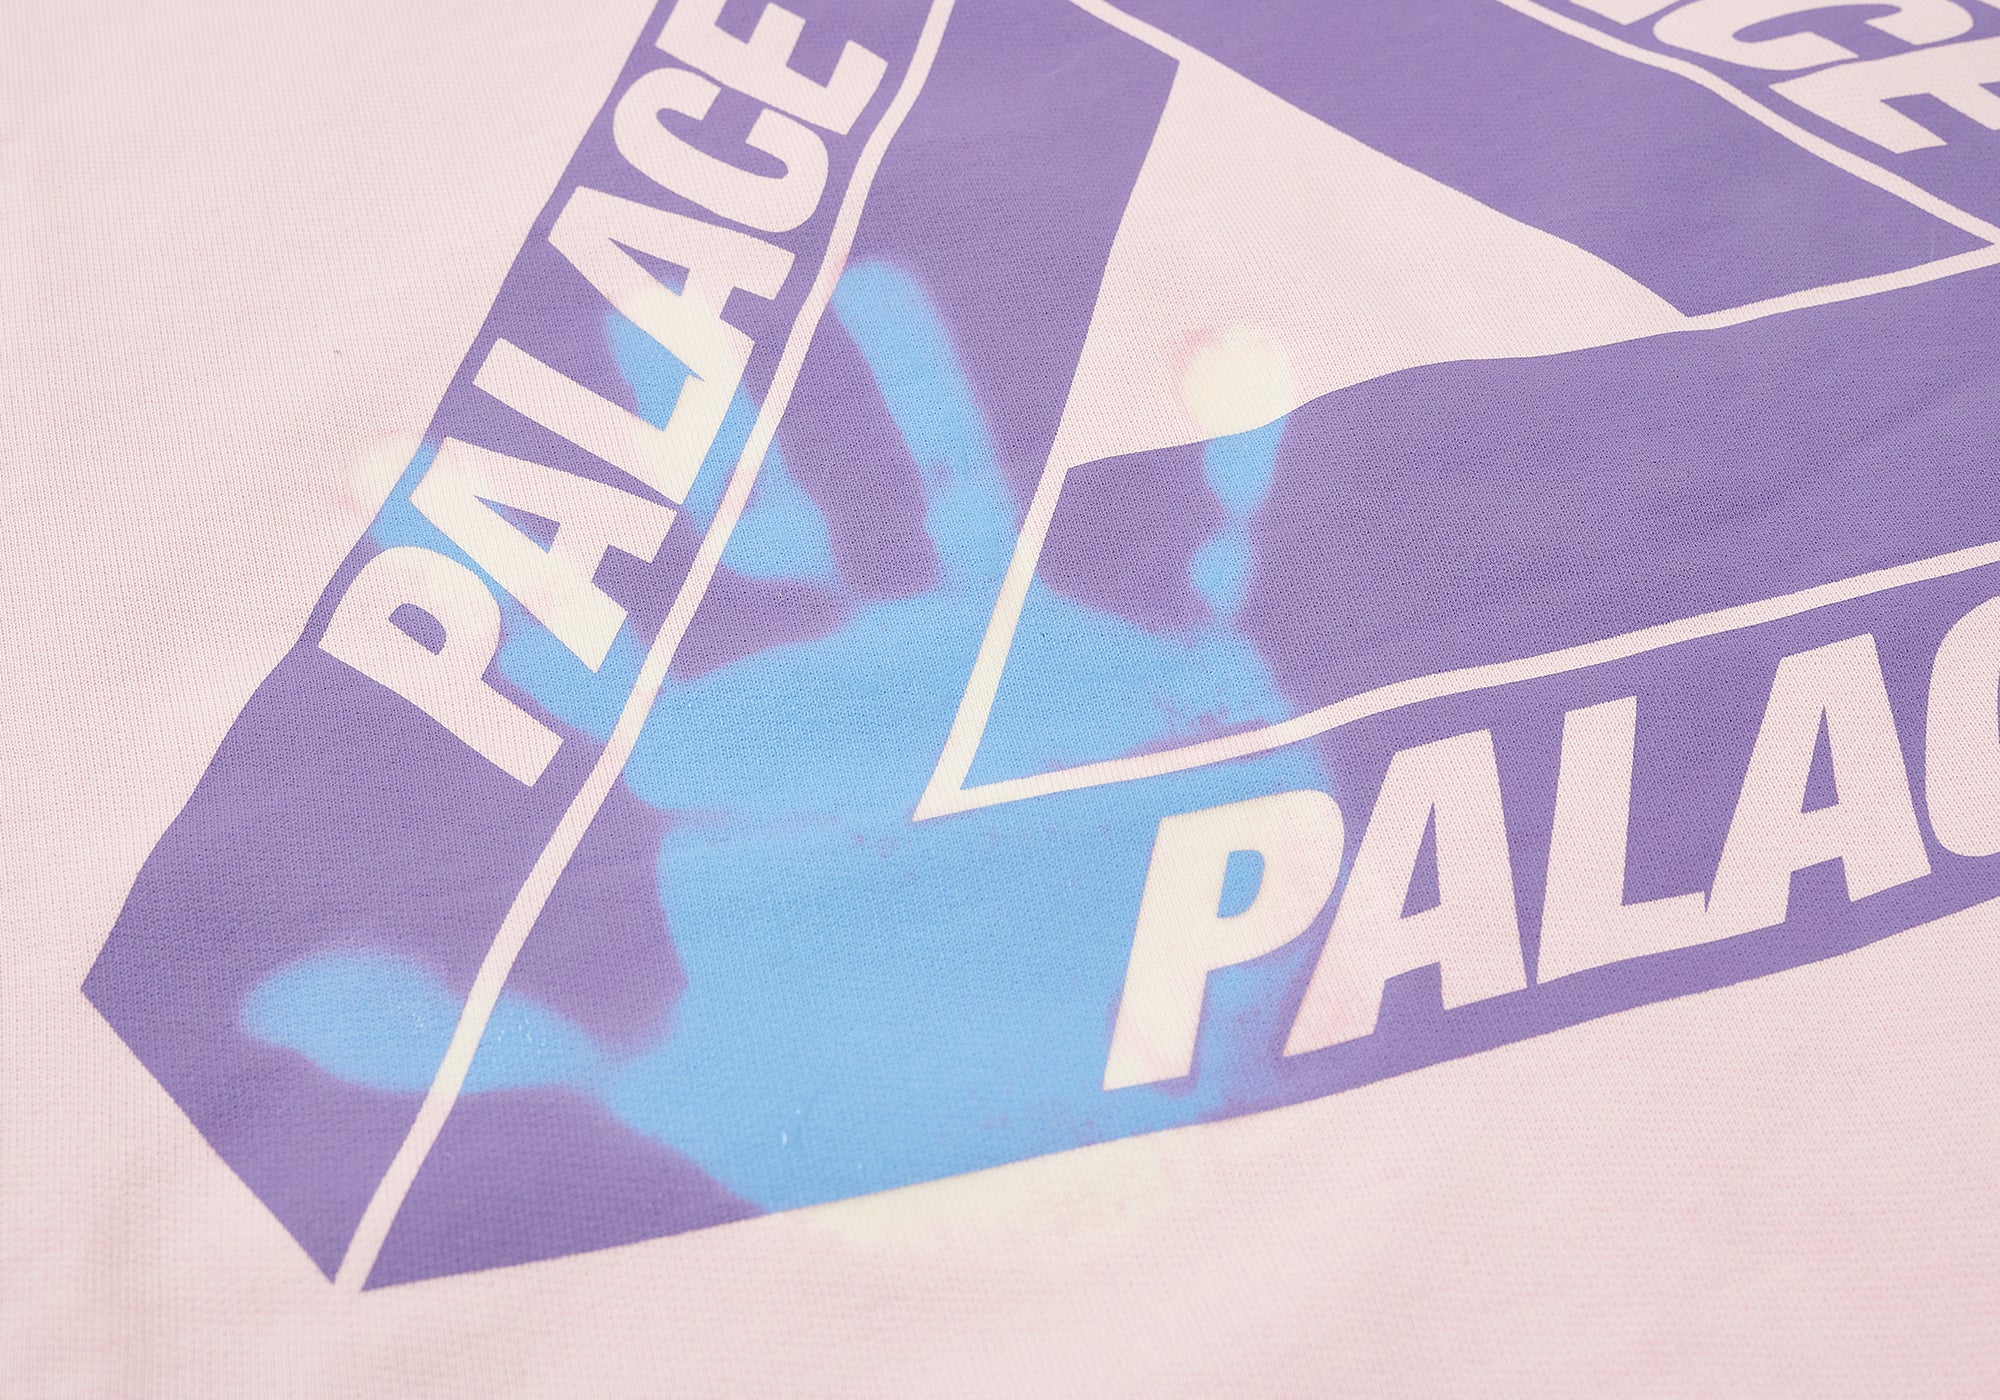 【人気SALE爆買い】PALACE REACTO TRI-FERG HOOD BLUE L パーカー トップス